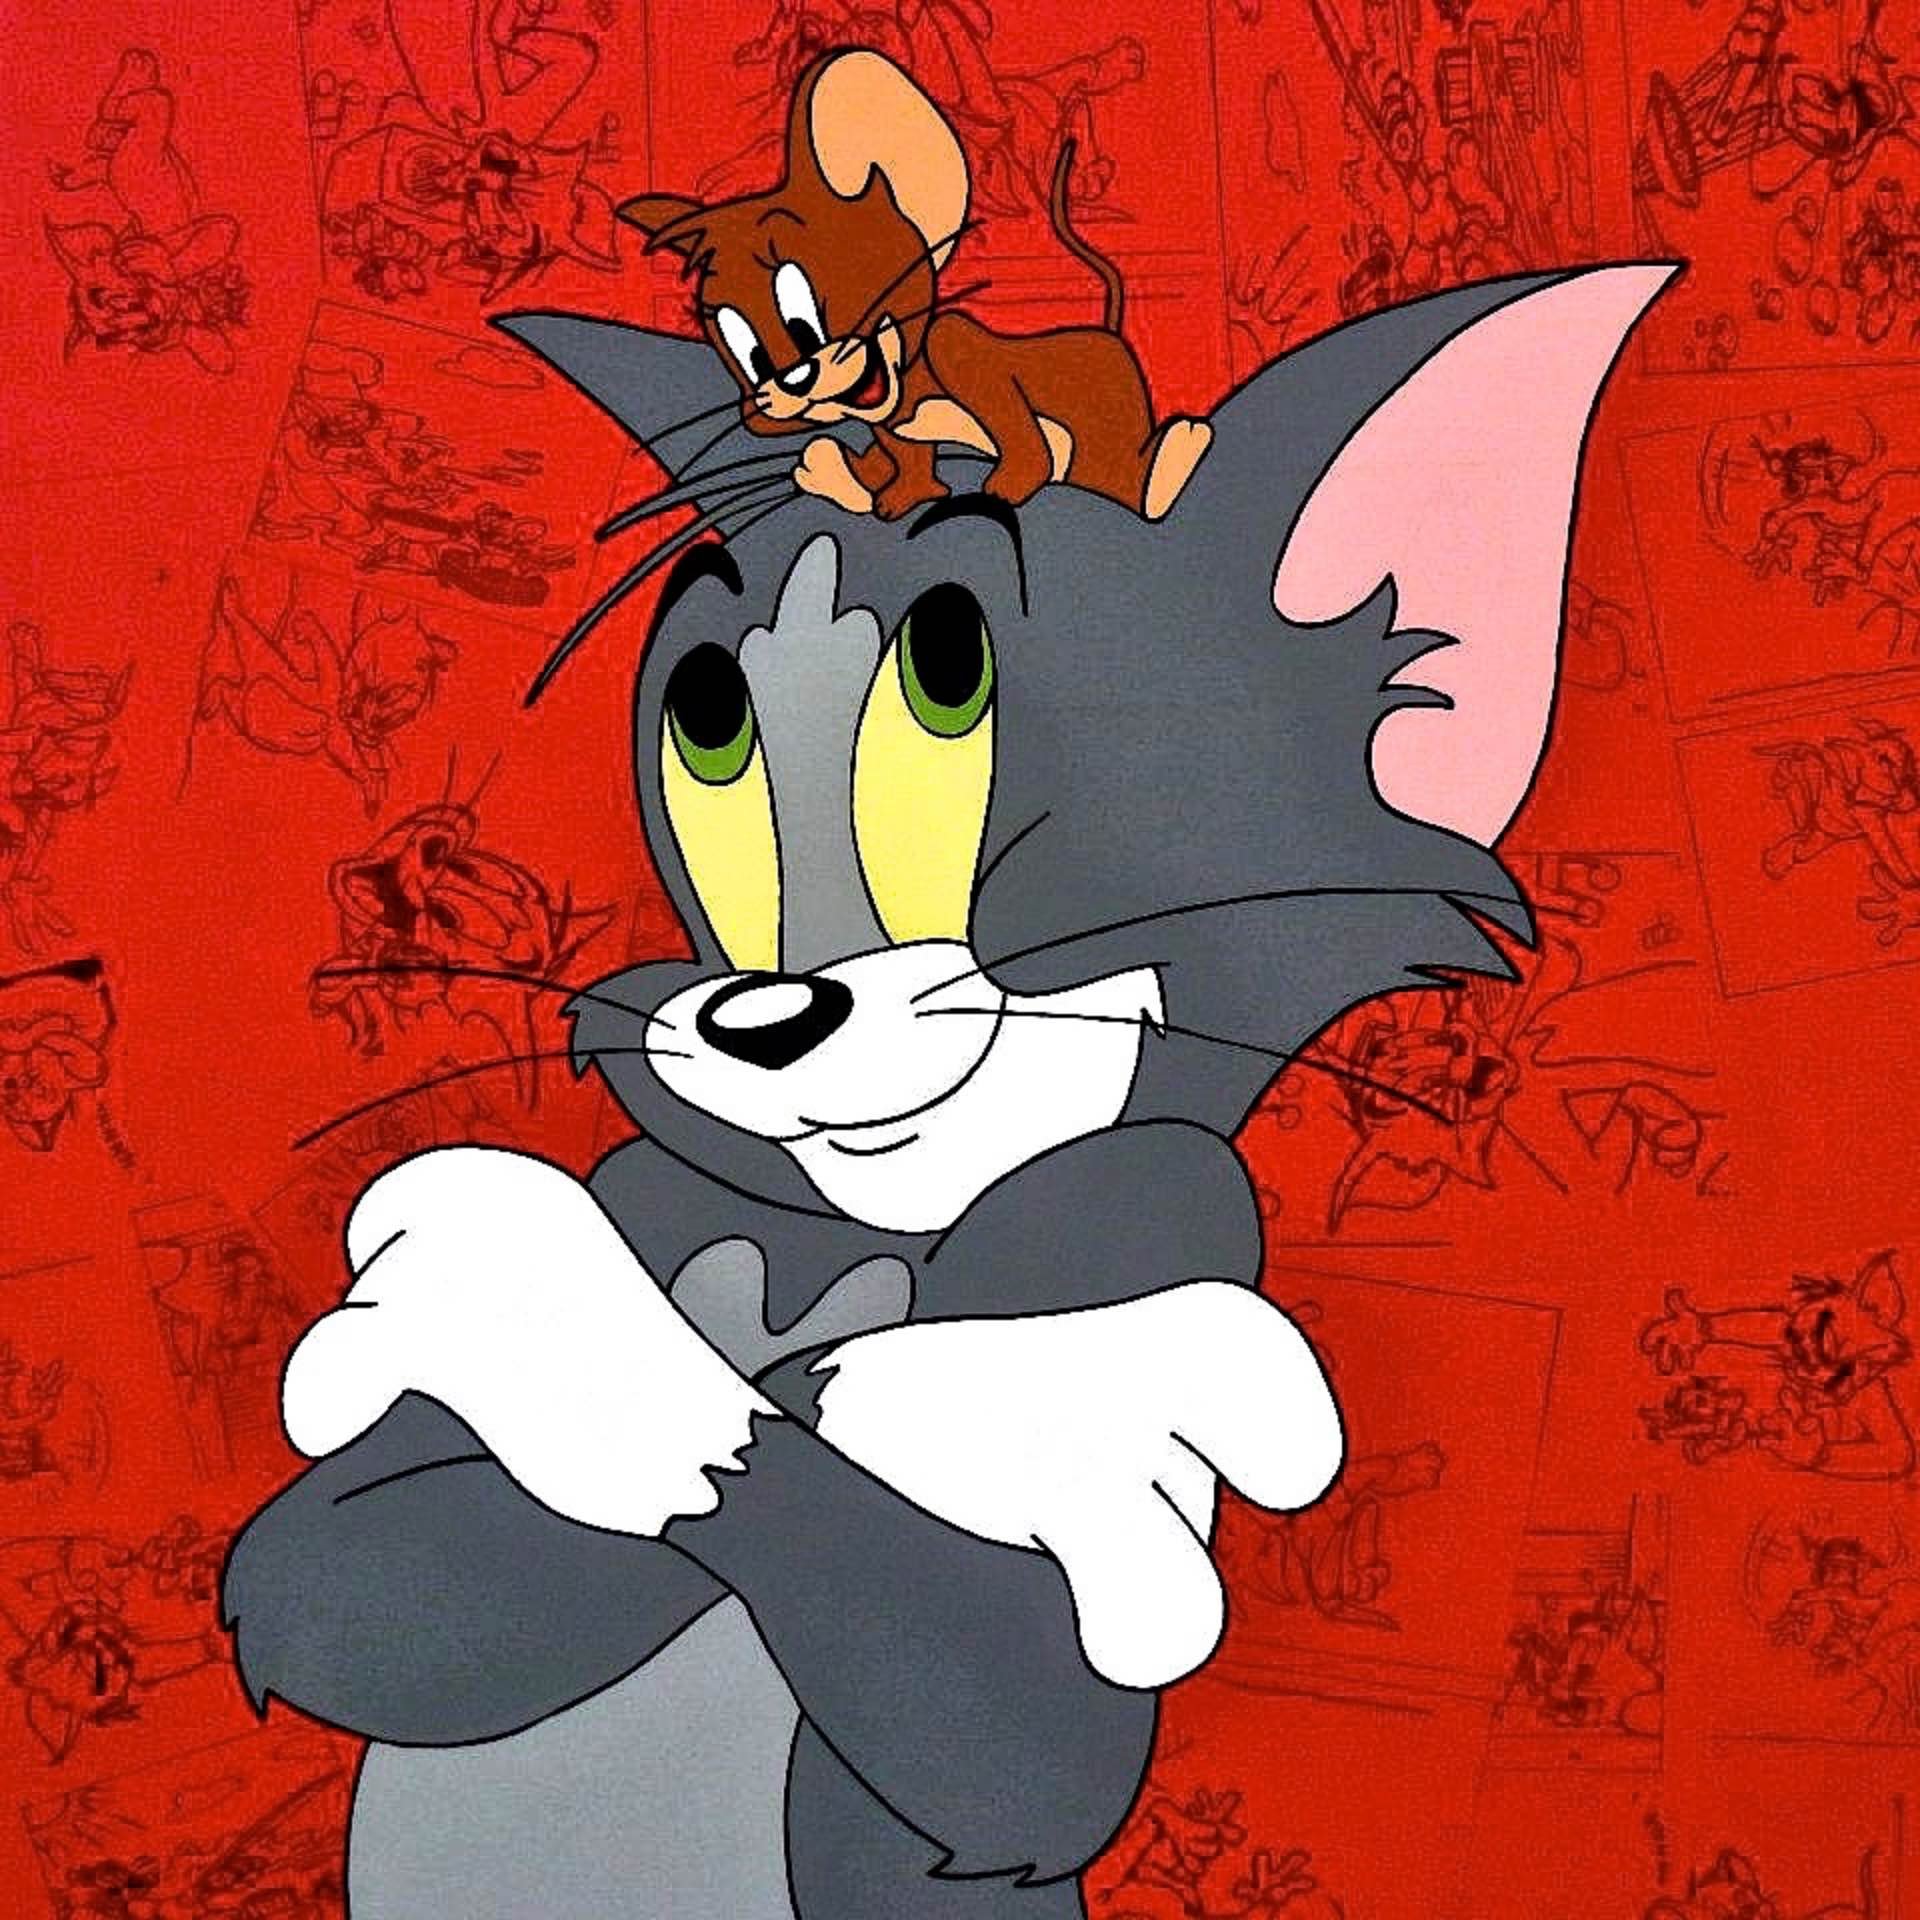 Том и джерри 78. Том и Джерри. Том и Джерри Джерри. Том и Джерри Tom and Jerry. Том и Джерри 1960.